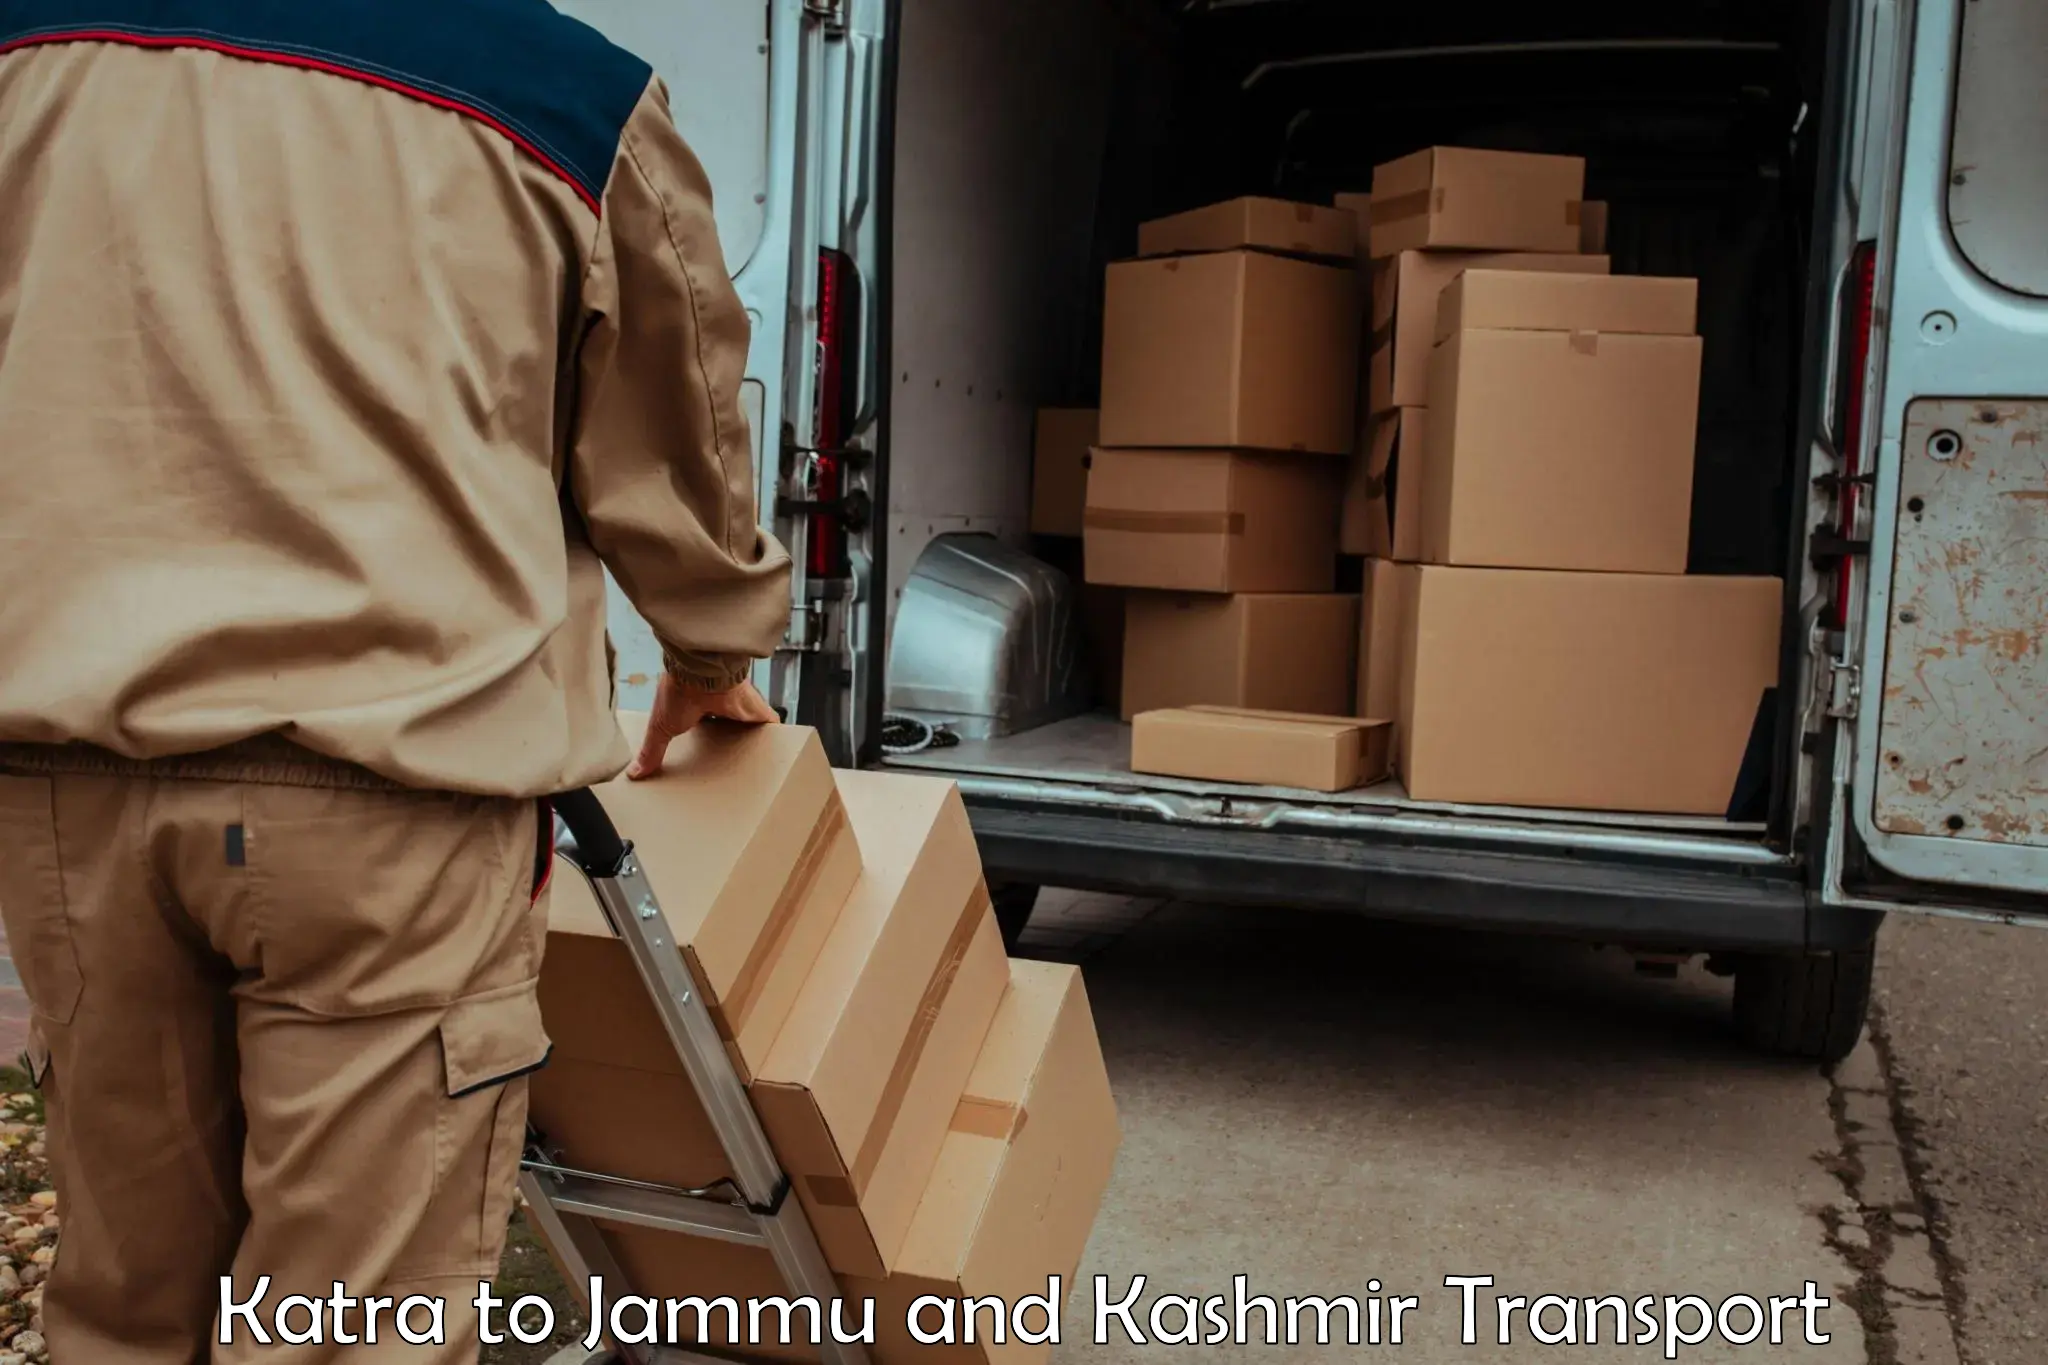 Cargo transport services Katra to Jammu and Kashmir